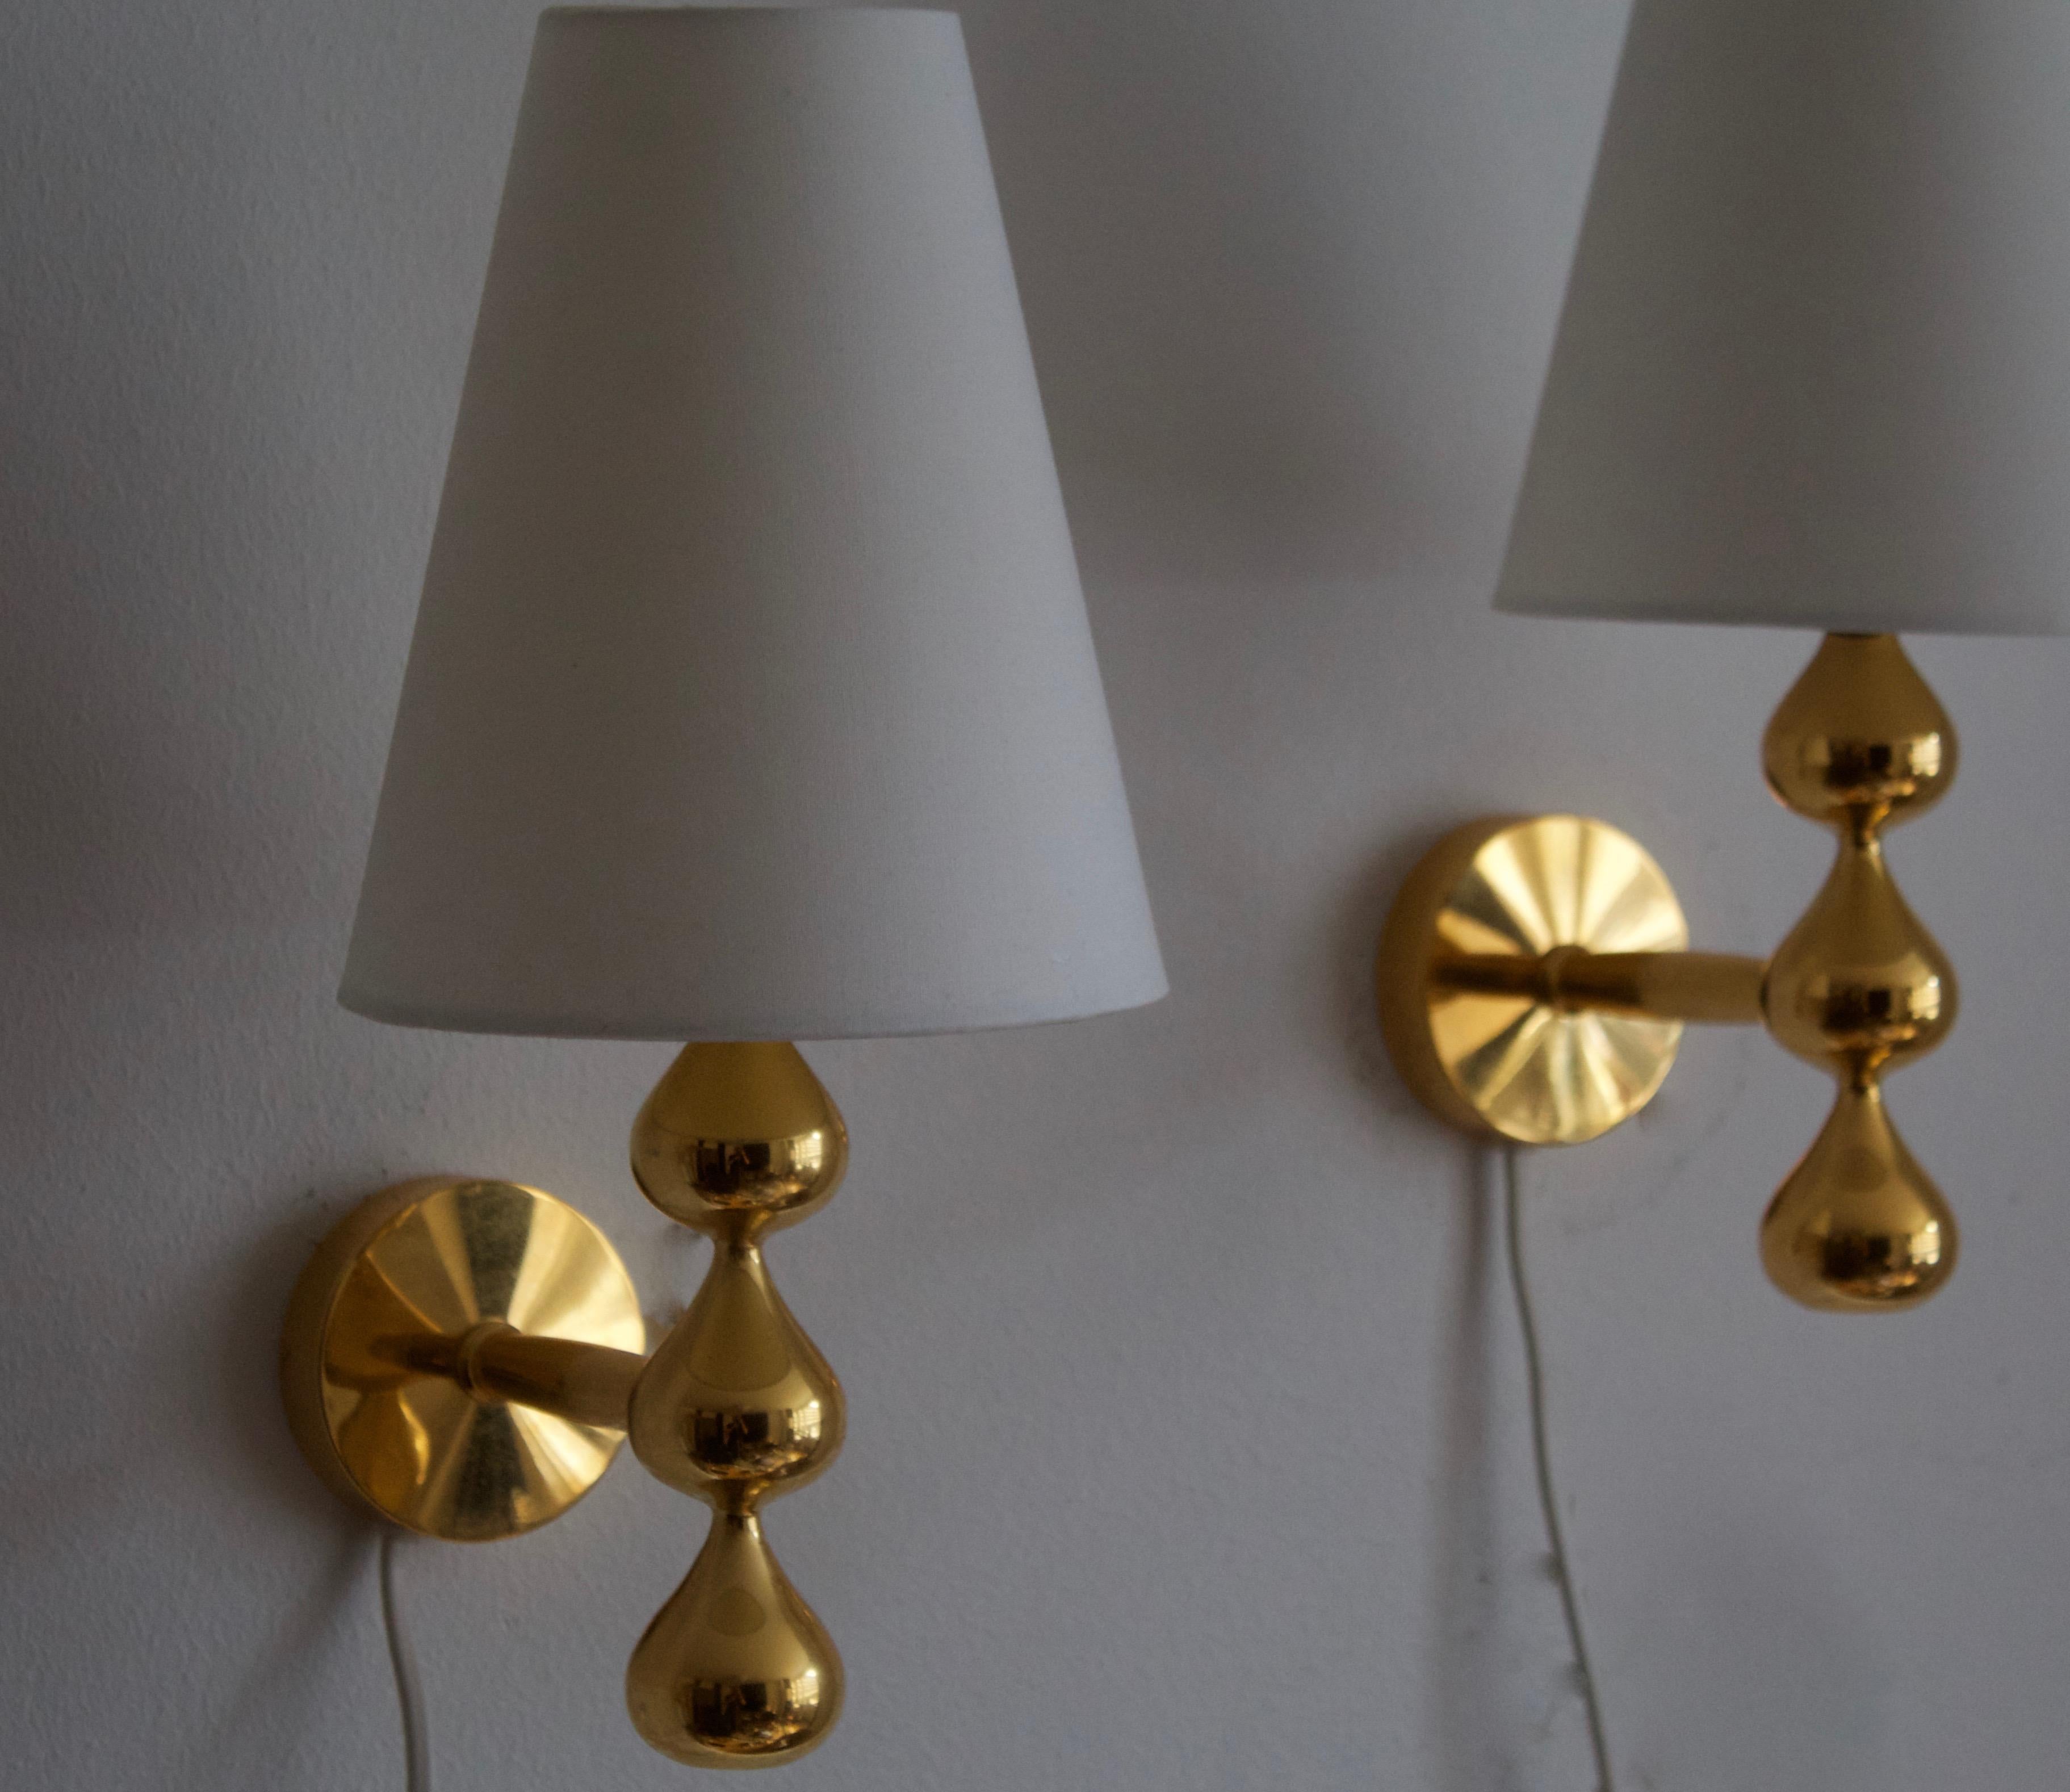 Danish Assmussen Design, Wall Lights, Gold-Plate, Fabric, Denmark, 1975